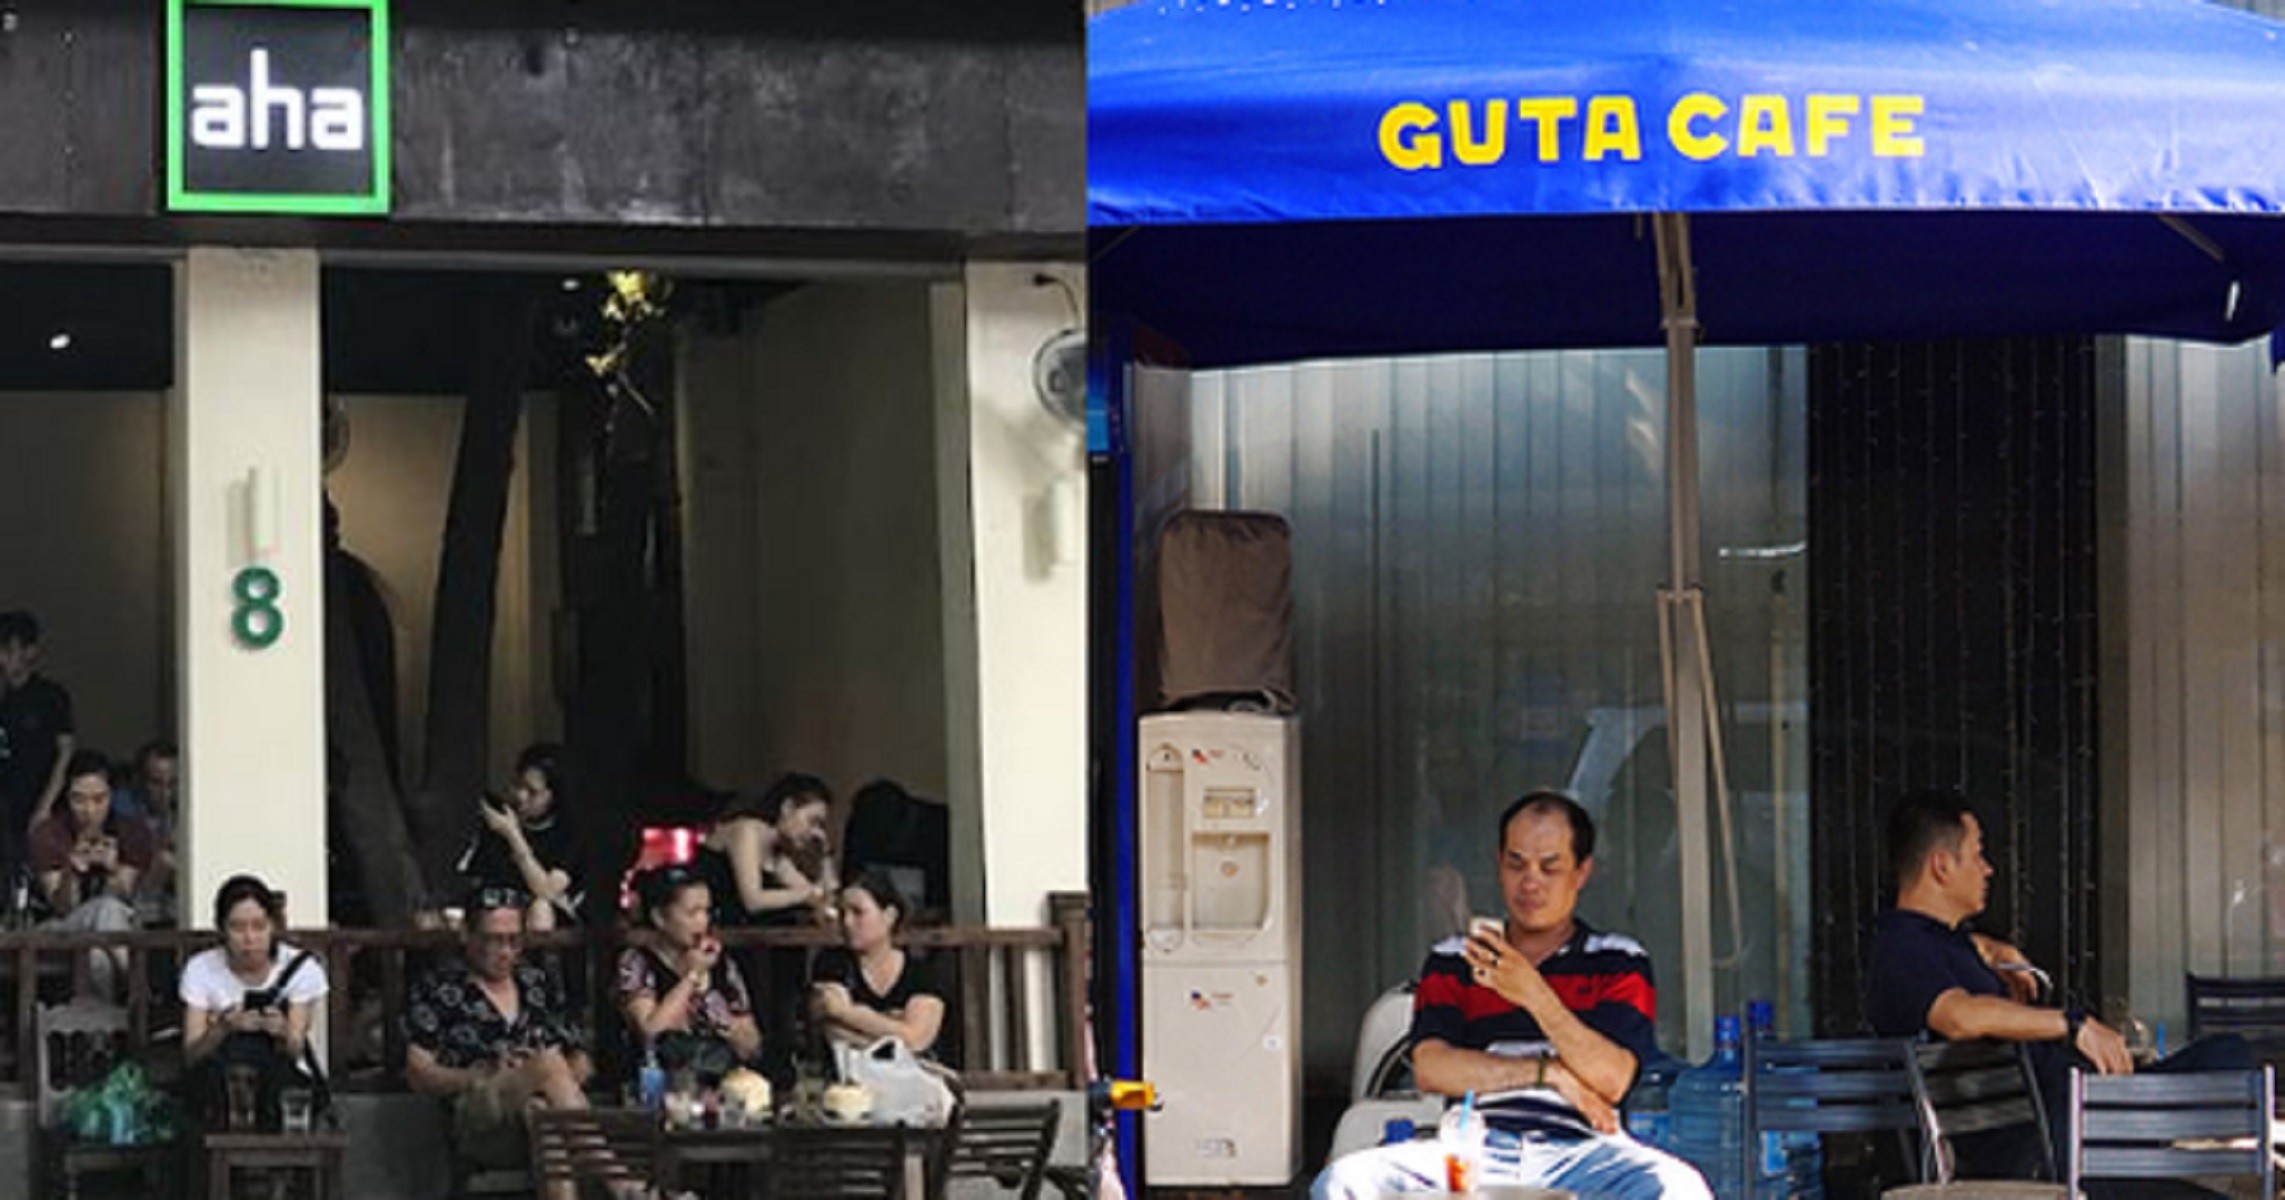 
Aha tại Hà Nội và Guta ở TP. Hồ Chí Minh chính là 2 chuỗi nổi tiếng nhất minh chứng cho sức hút của văn hóa cà phê vỉa hè đối với các thế hệ cư dân thời nay
